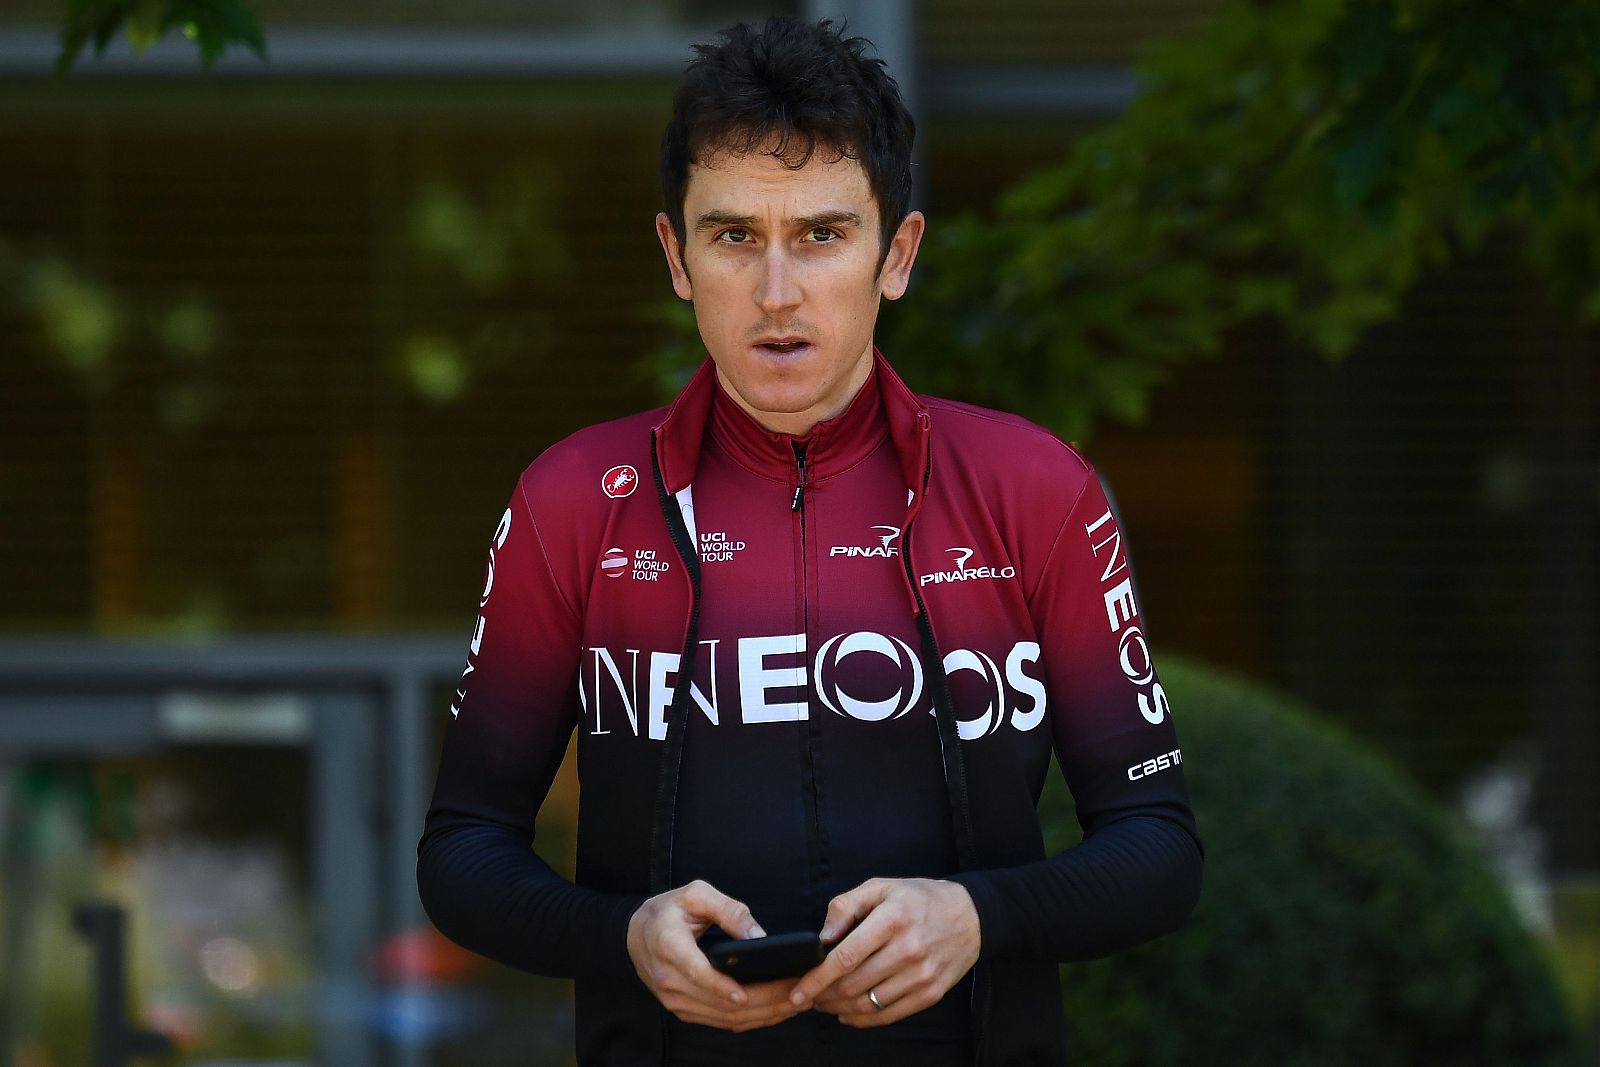 Imagen del británico Geraint Thomas (INEOS) antes de tomar la salida del Tour de Francia 2019.